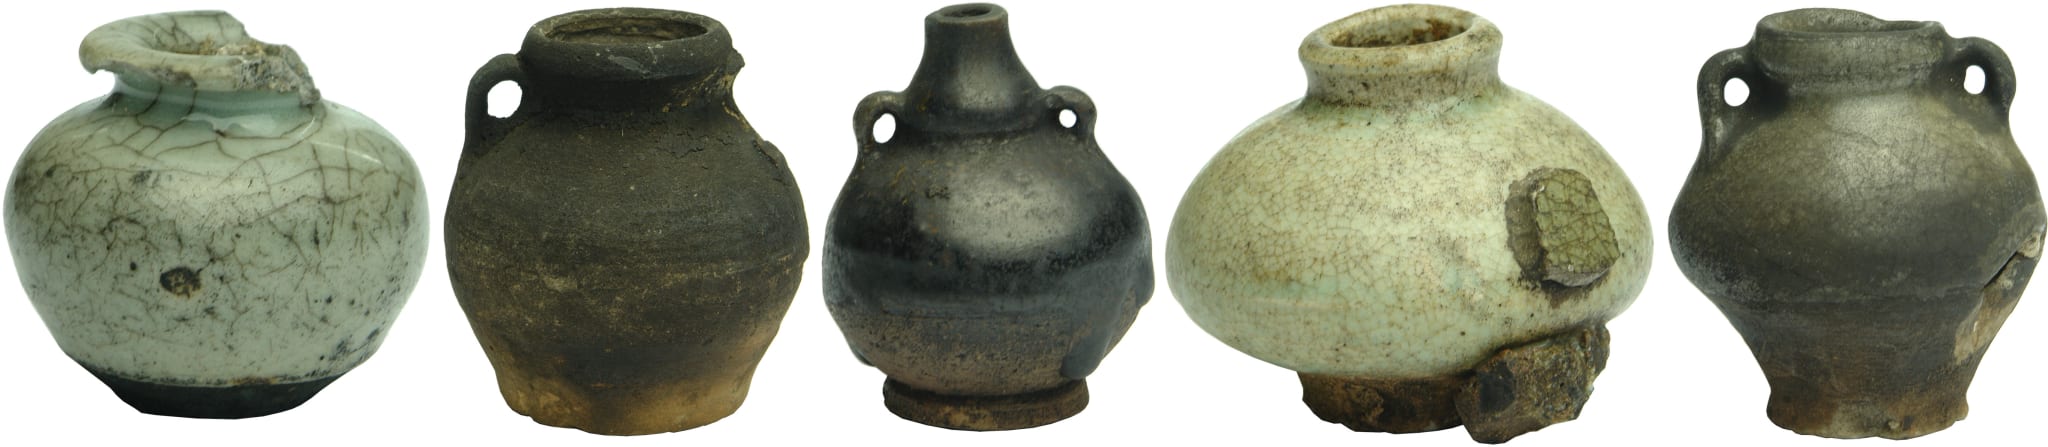 Thai Jarlets Antiquities Ceramics